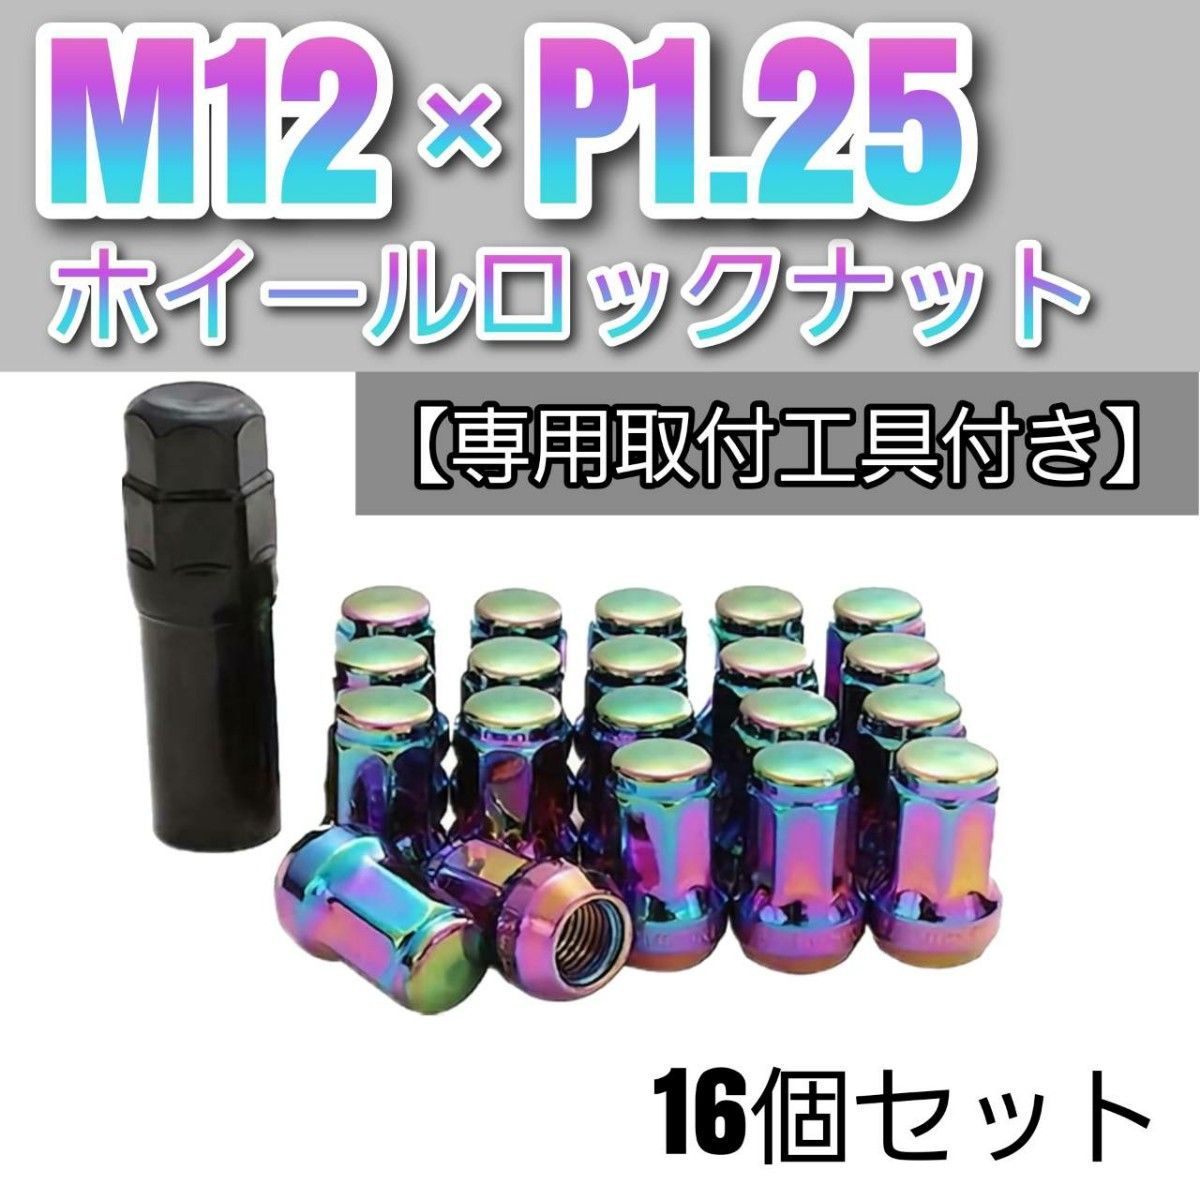 【盗難防止】ホイール ロックナット 16個 スチール製 M12/P1.25 専用取付工具付 レインボー